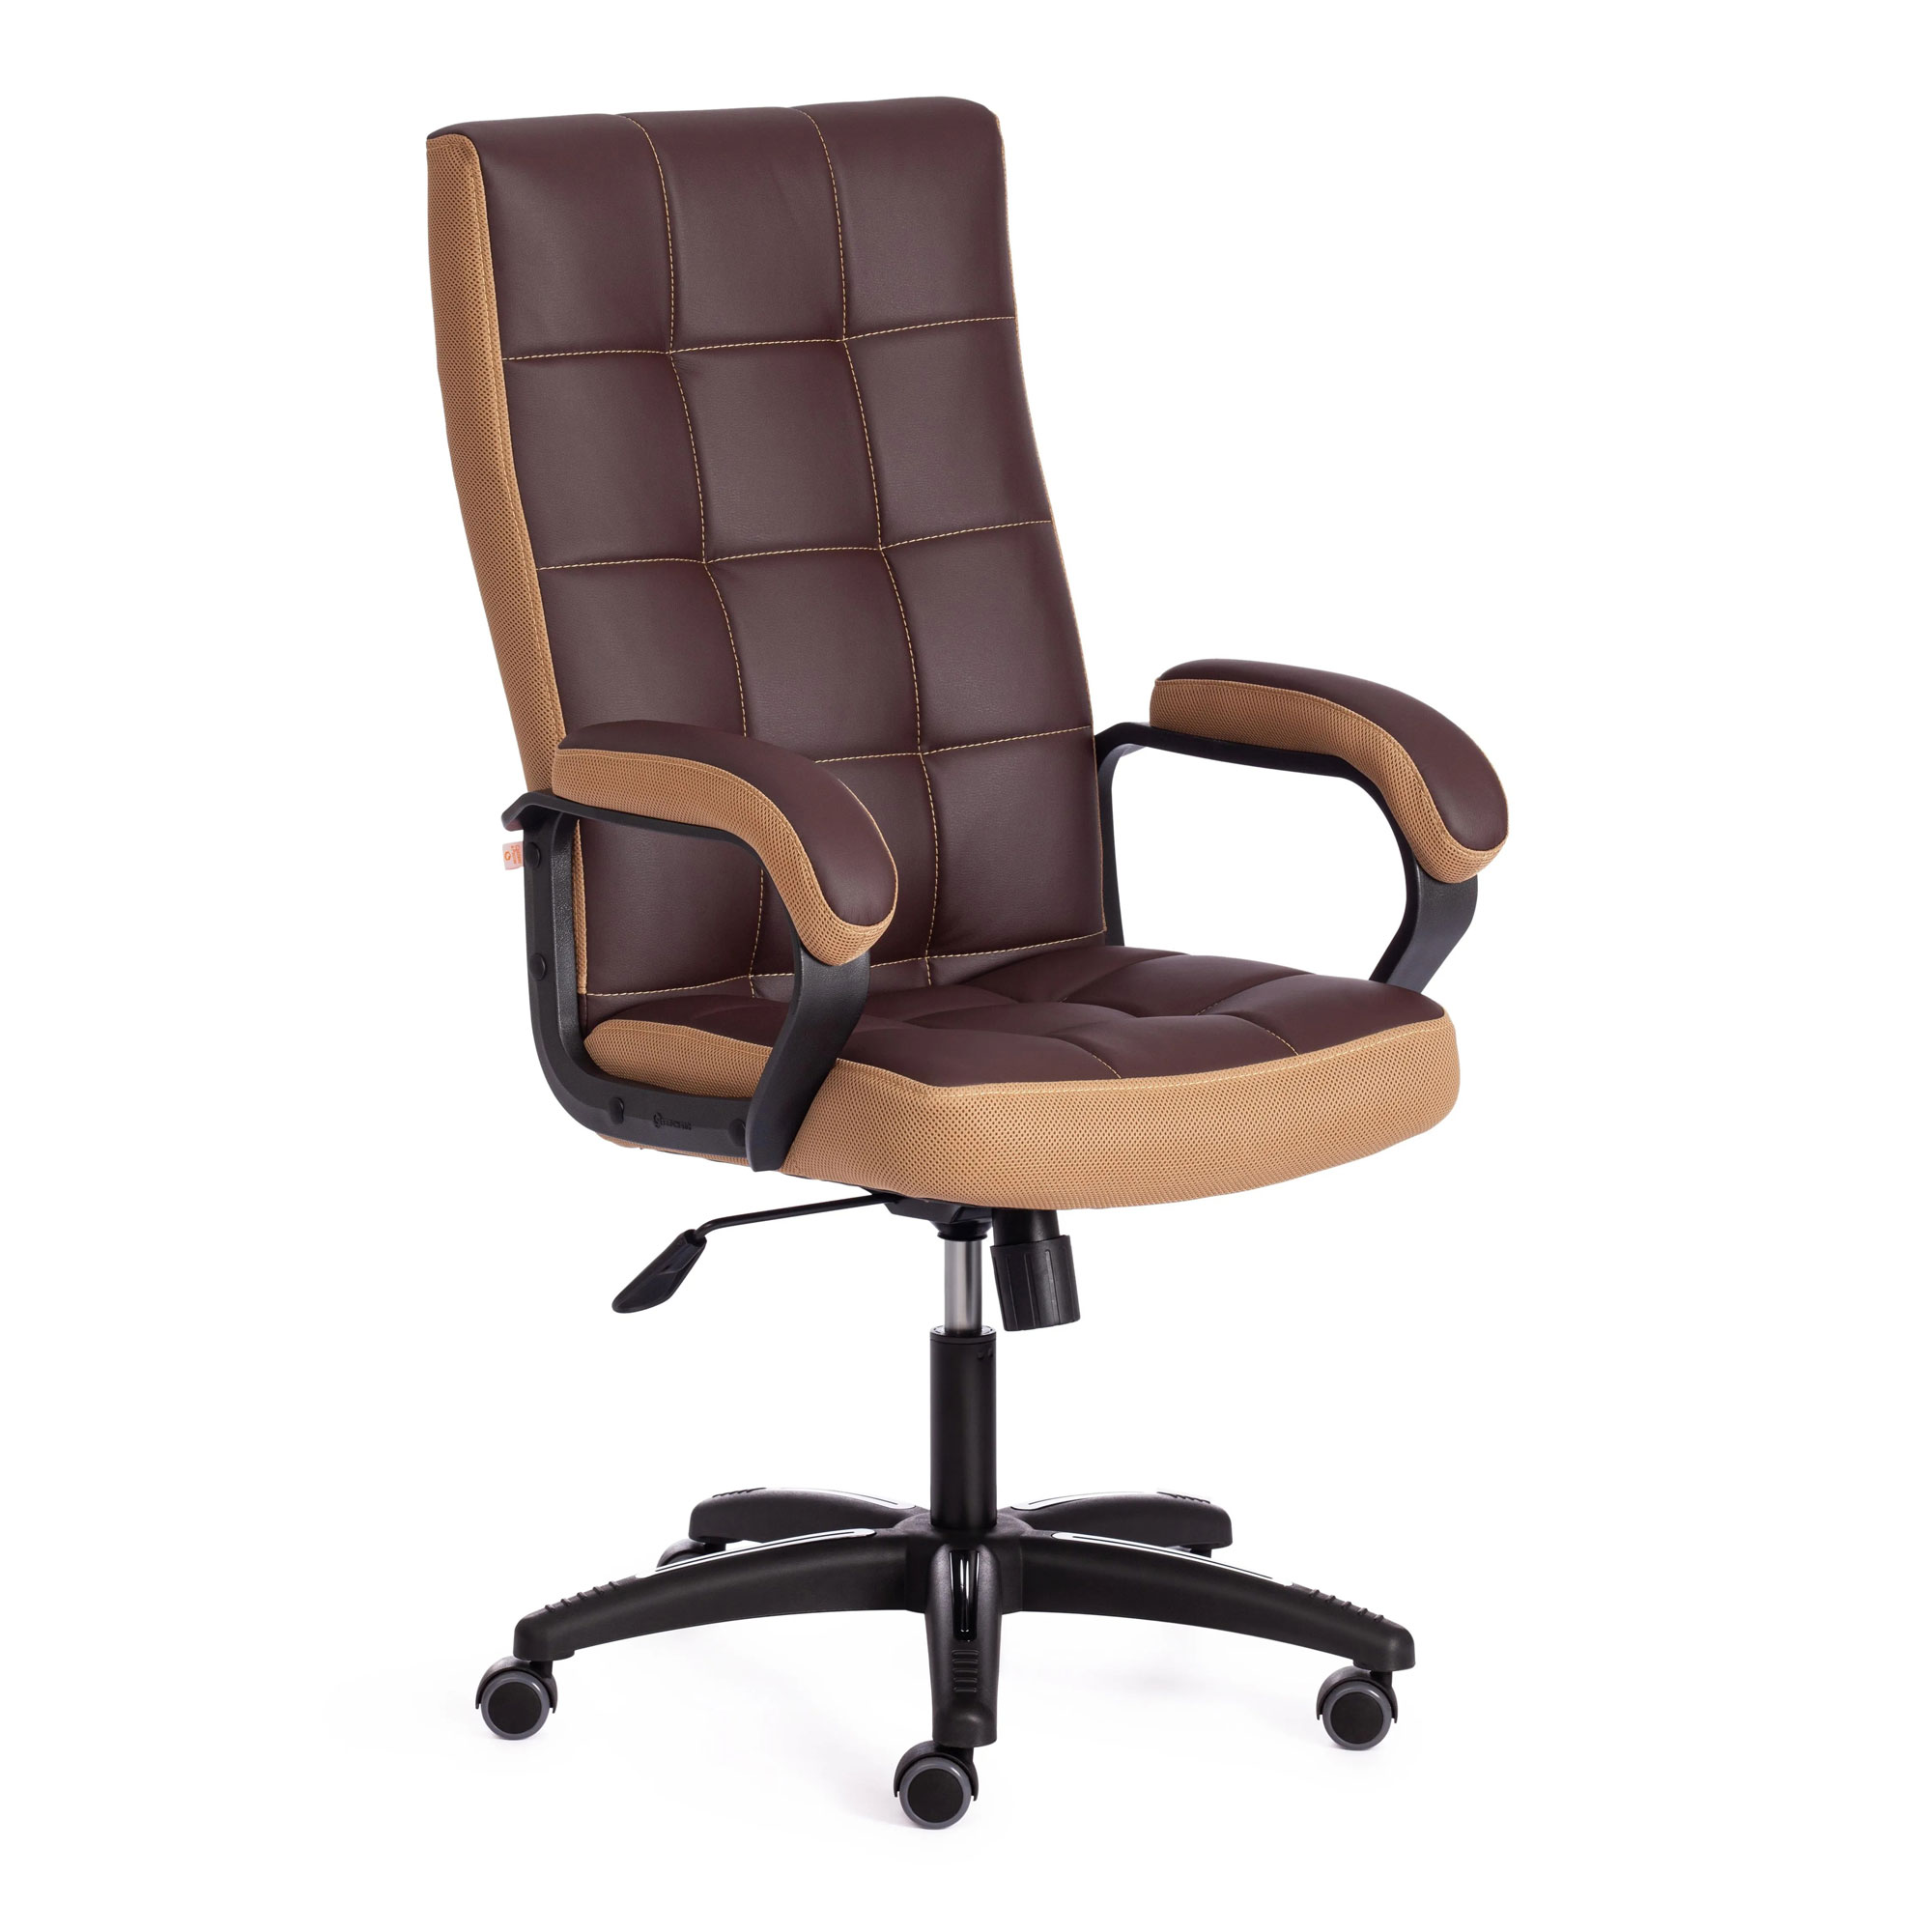 Кресло компьютерное TC искусственная кожа коричневое с бронзовым 61х47х126 см кресло компьютерное tc искусственная кожа бежевое 63х48х117 см